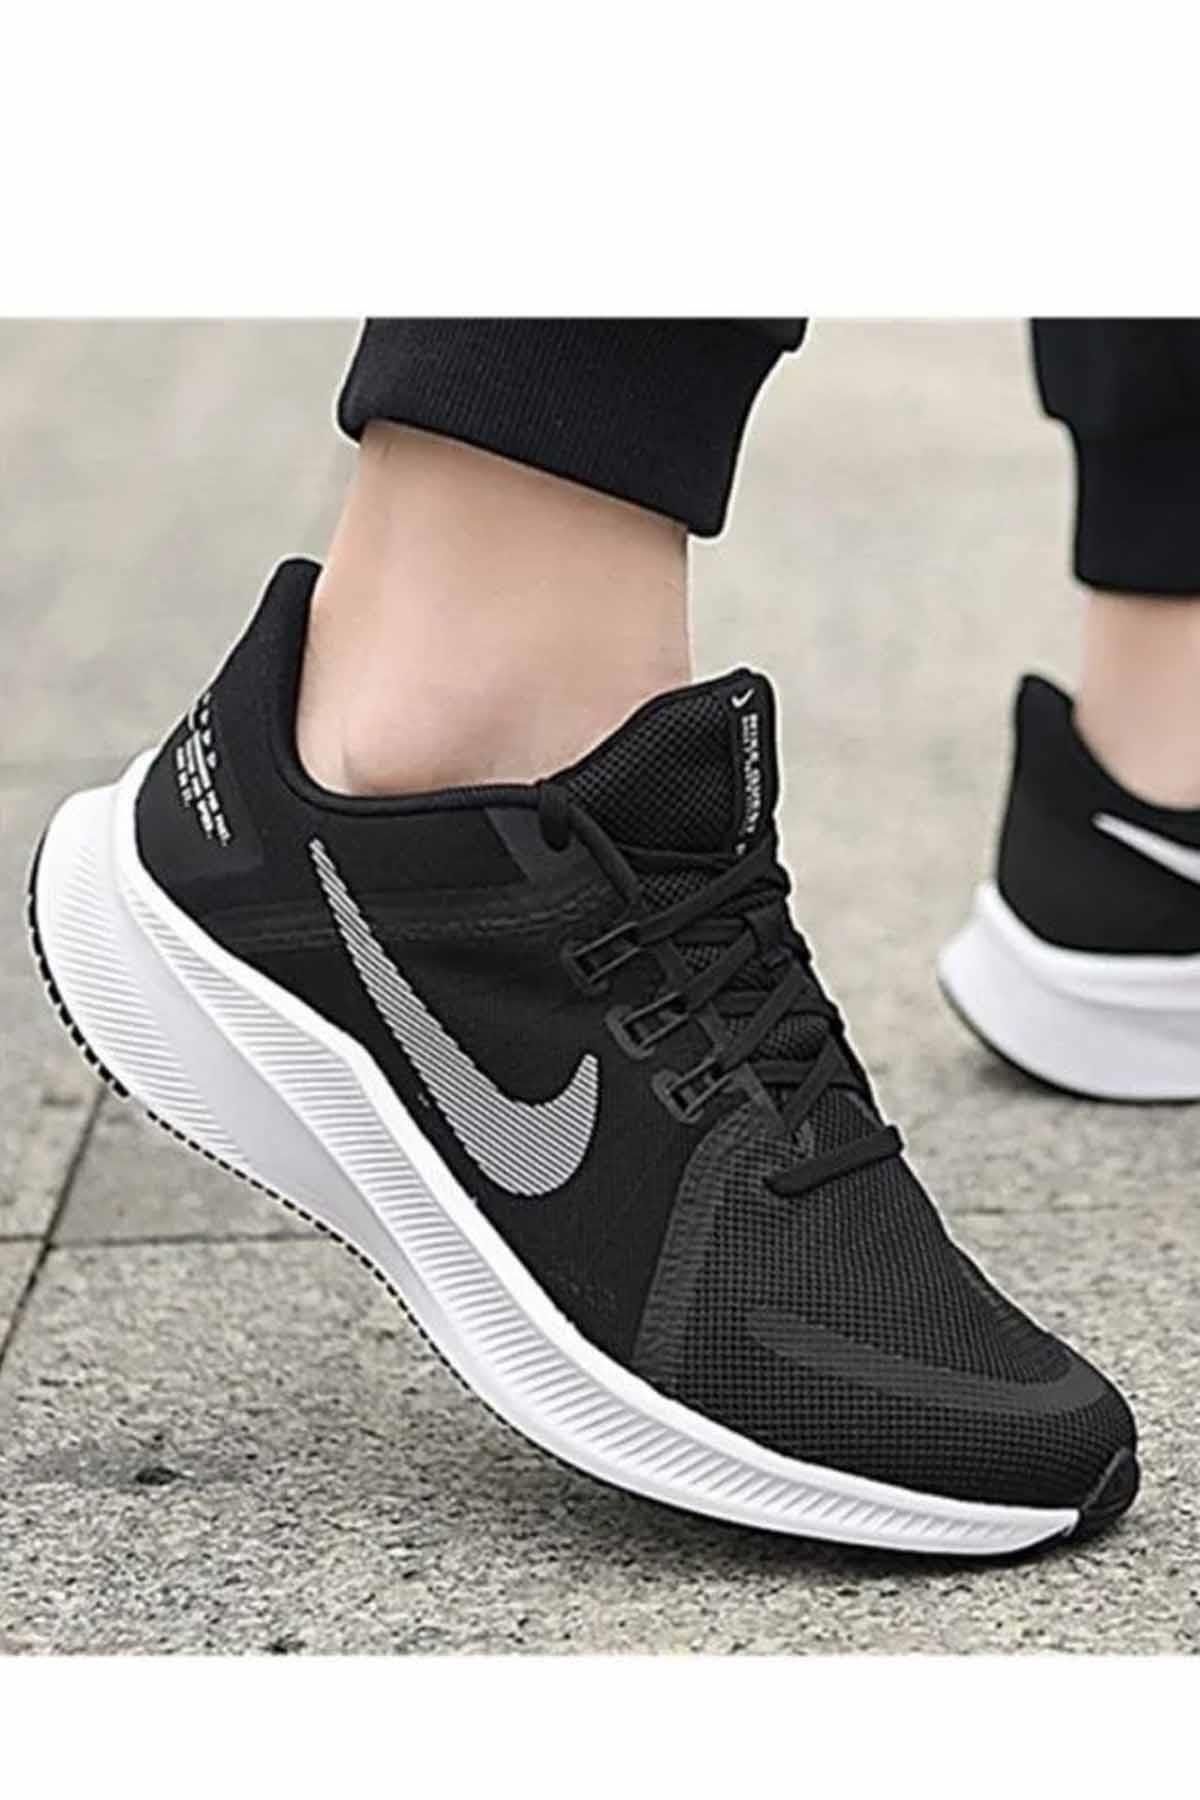 Nike Quest 4 Erkek Yürüyüş Koşu Ayakkabı Da1105-006-siyah-byz